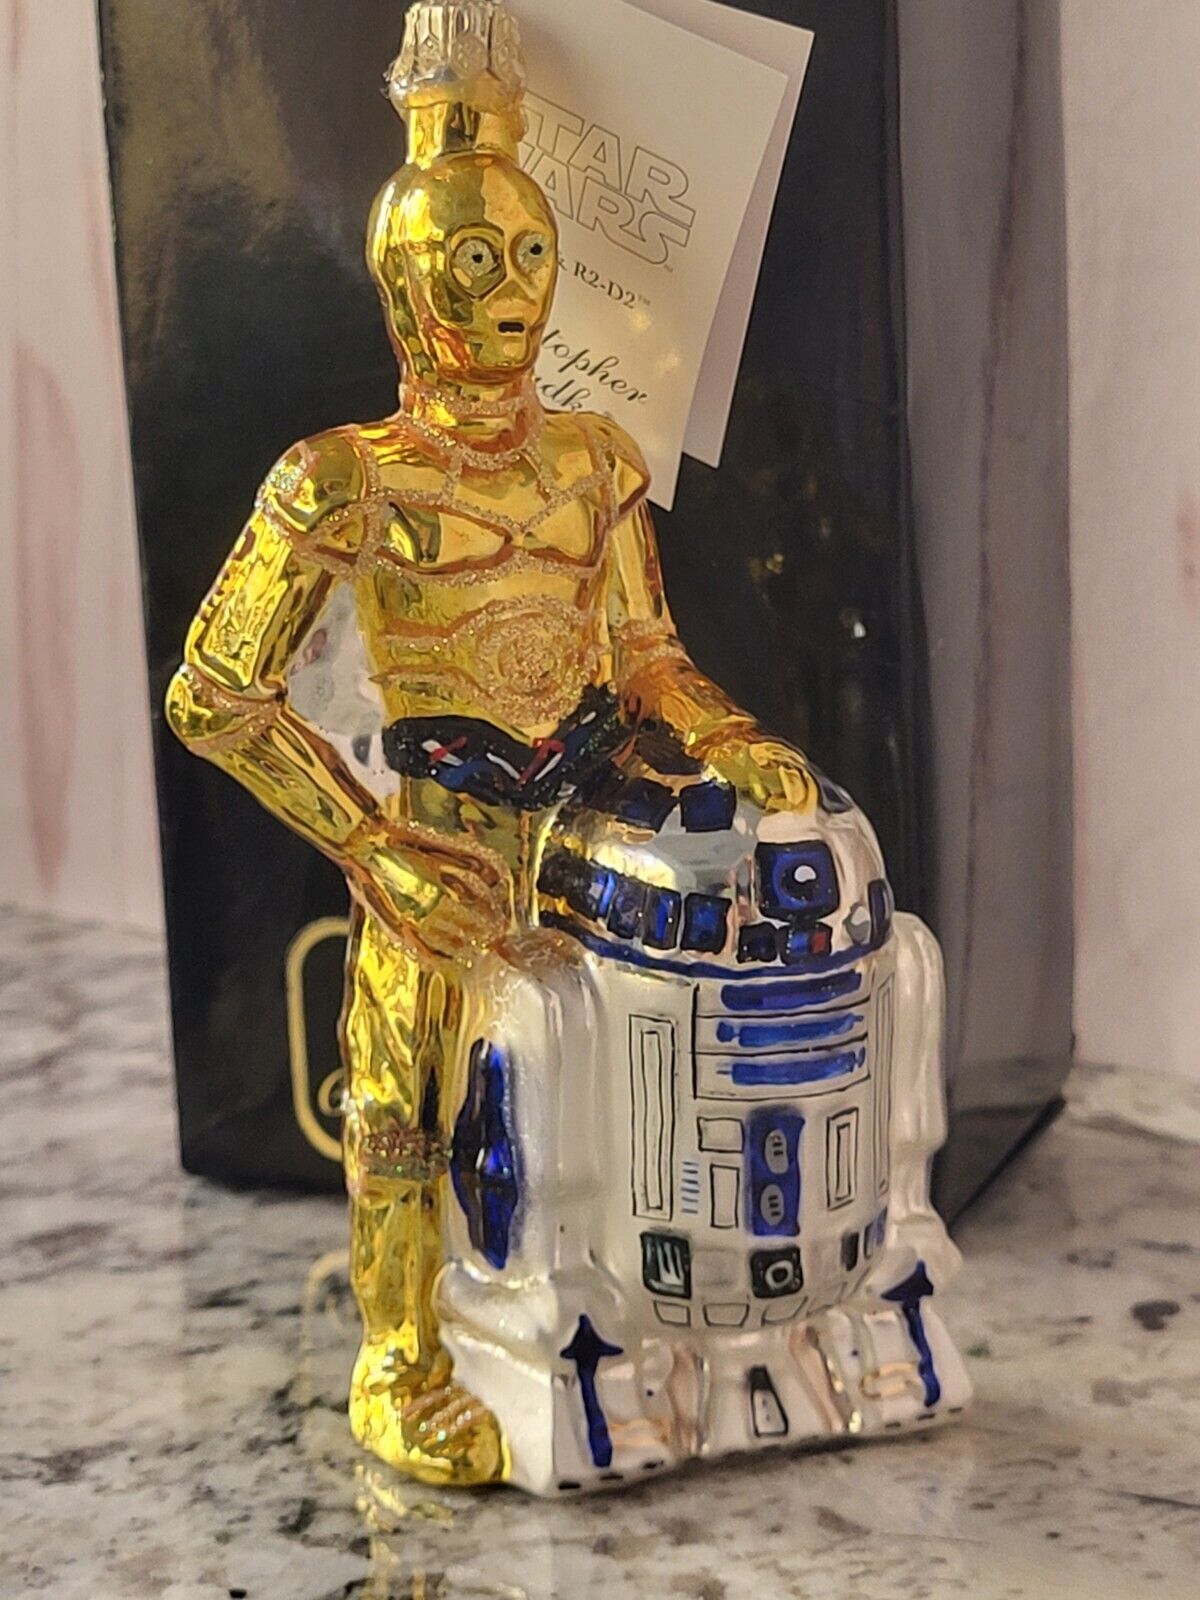 1999 Christopher Radko Star Wars C-3PO & R2-D2 Ornament 99-STW-01. MINT